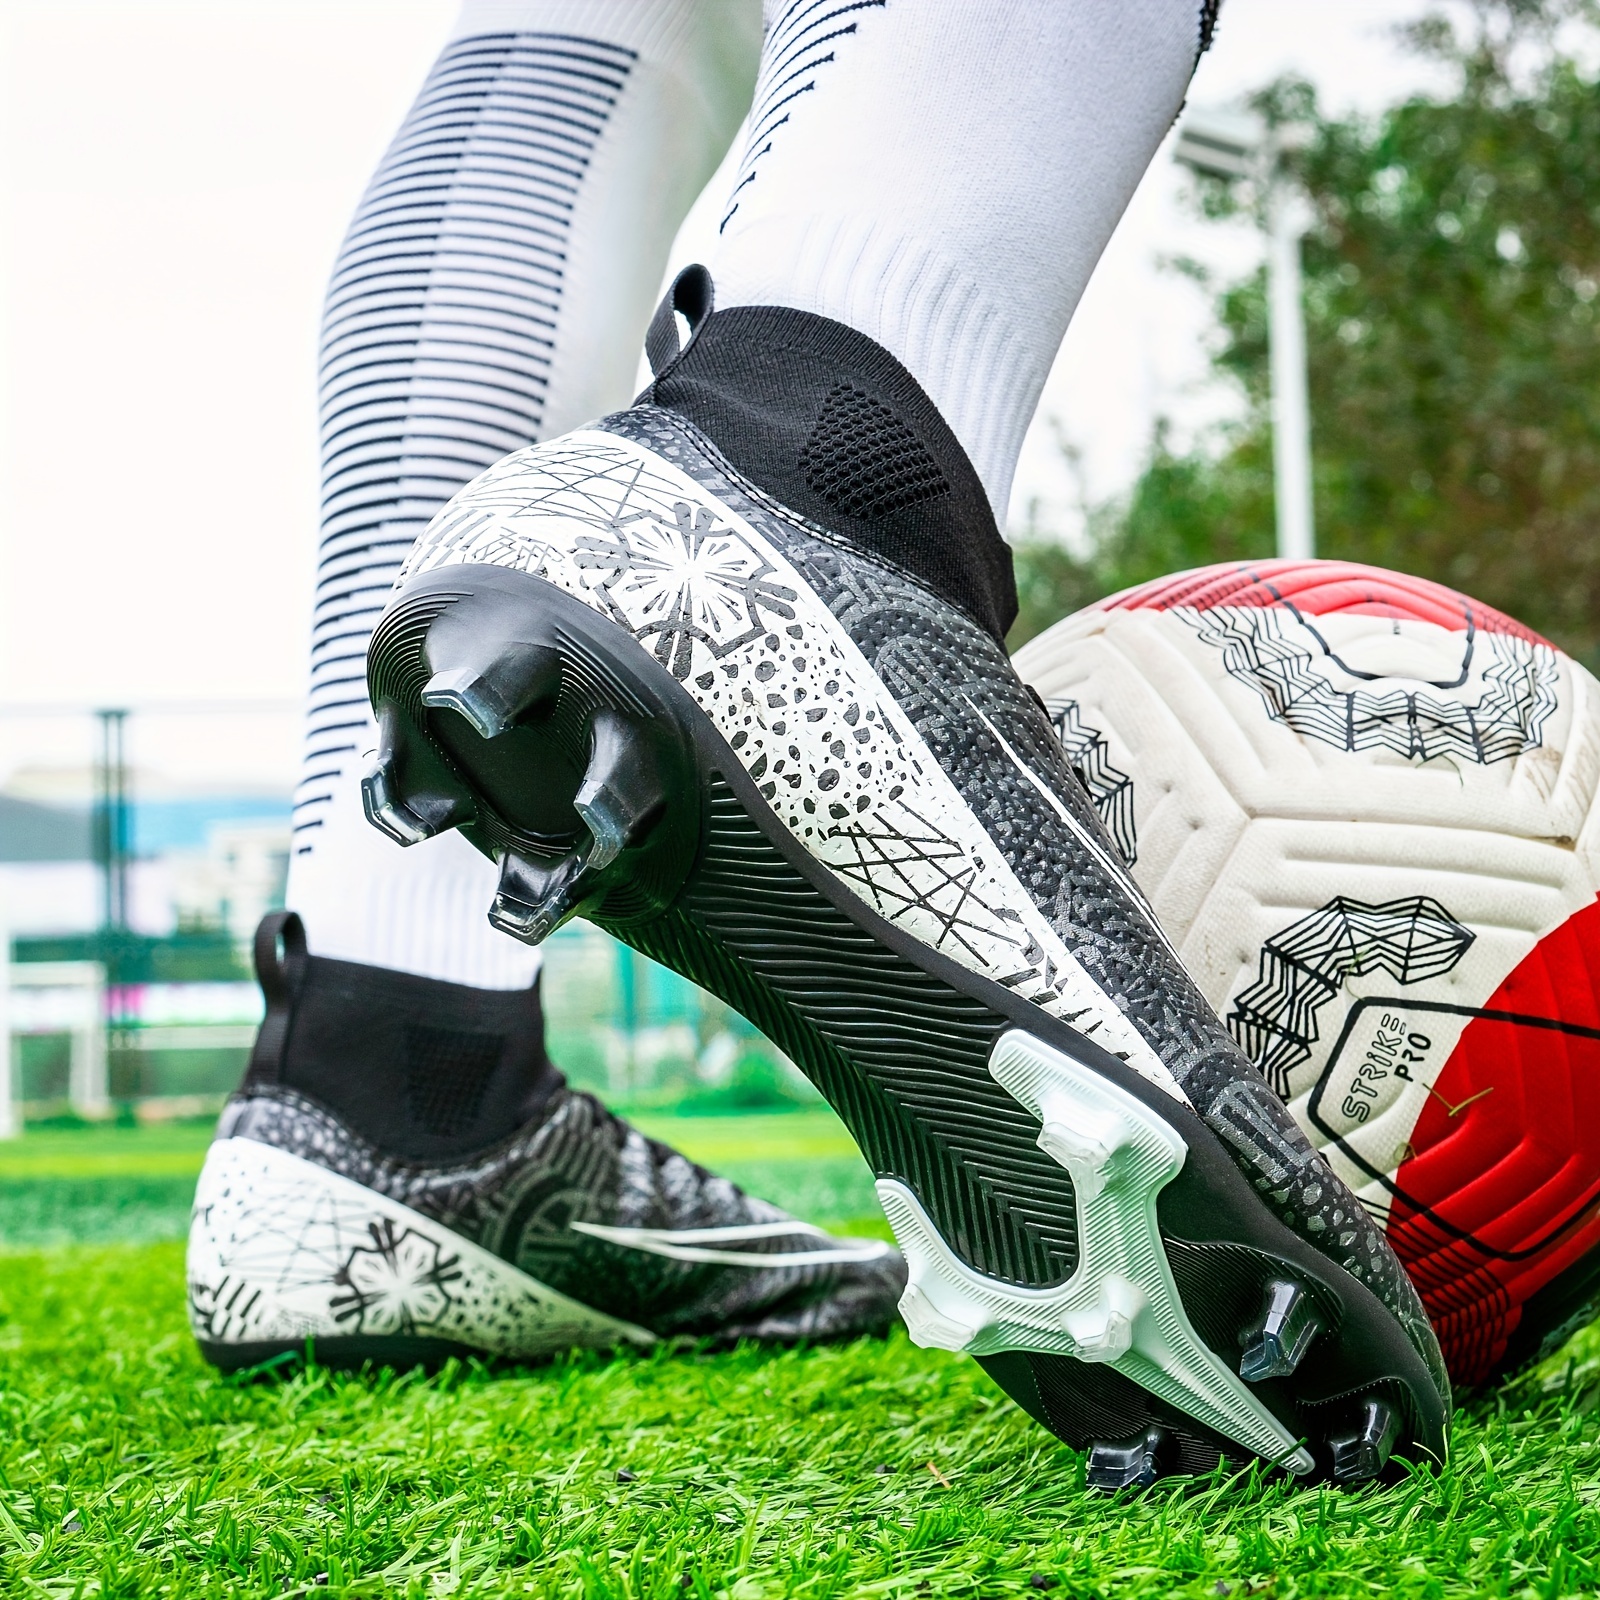  Tacos de fútbol para hombres/niños grandes FG/AG botas de fútbol  zapatillas de entrenamiento para jóvenes, Negro-fg : Ropa, Zapatos y Joyería